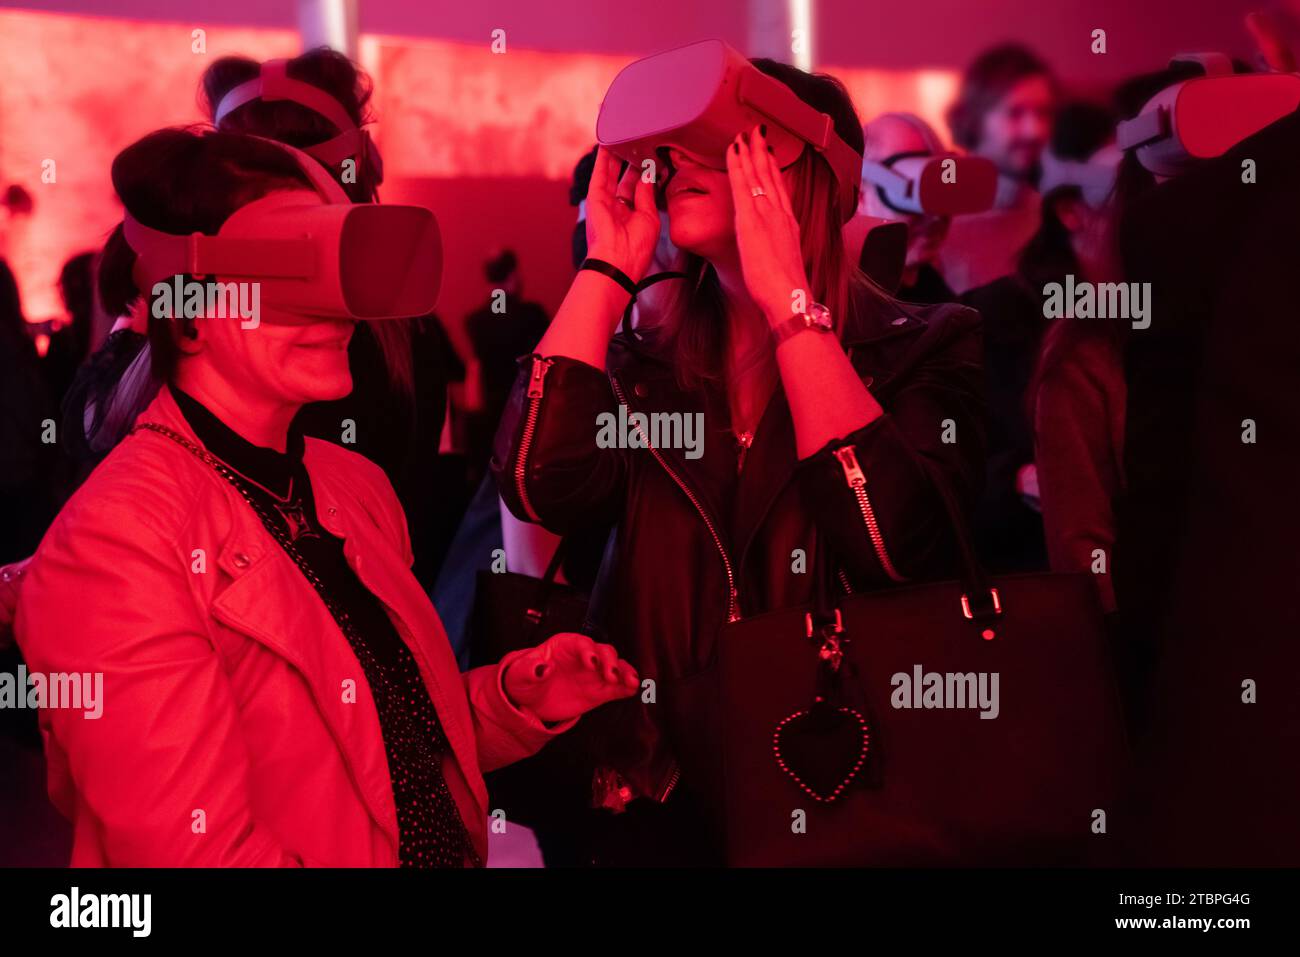 Zwei Frauen, die in virtuelle Welten eingetaucht sind, umgeben von einem rot beleuchteten Ambiente und einer Menge von Teilnehmern, die die Freude an futuristischer Technologie in einer dynamischen Atmosphäre teilen Stockfoto